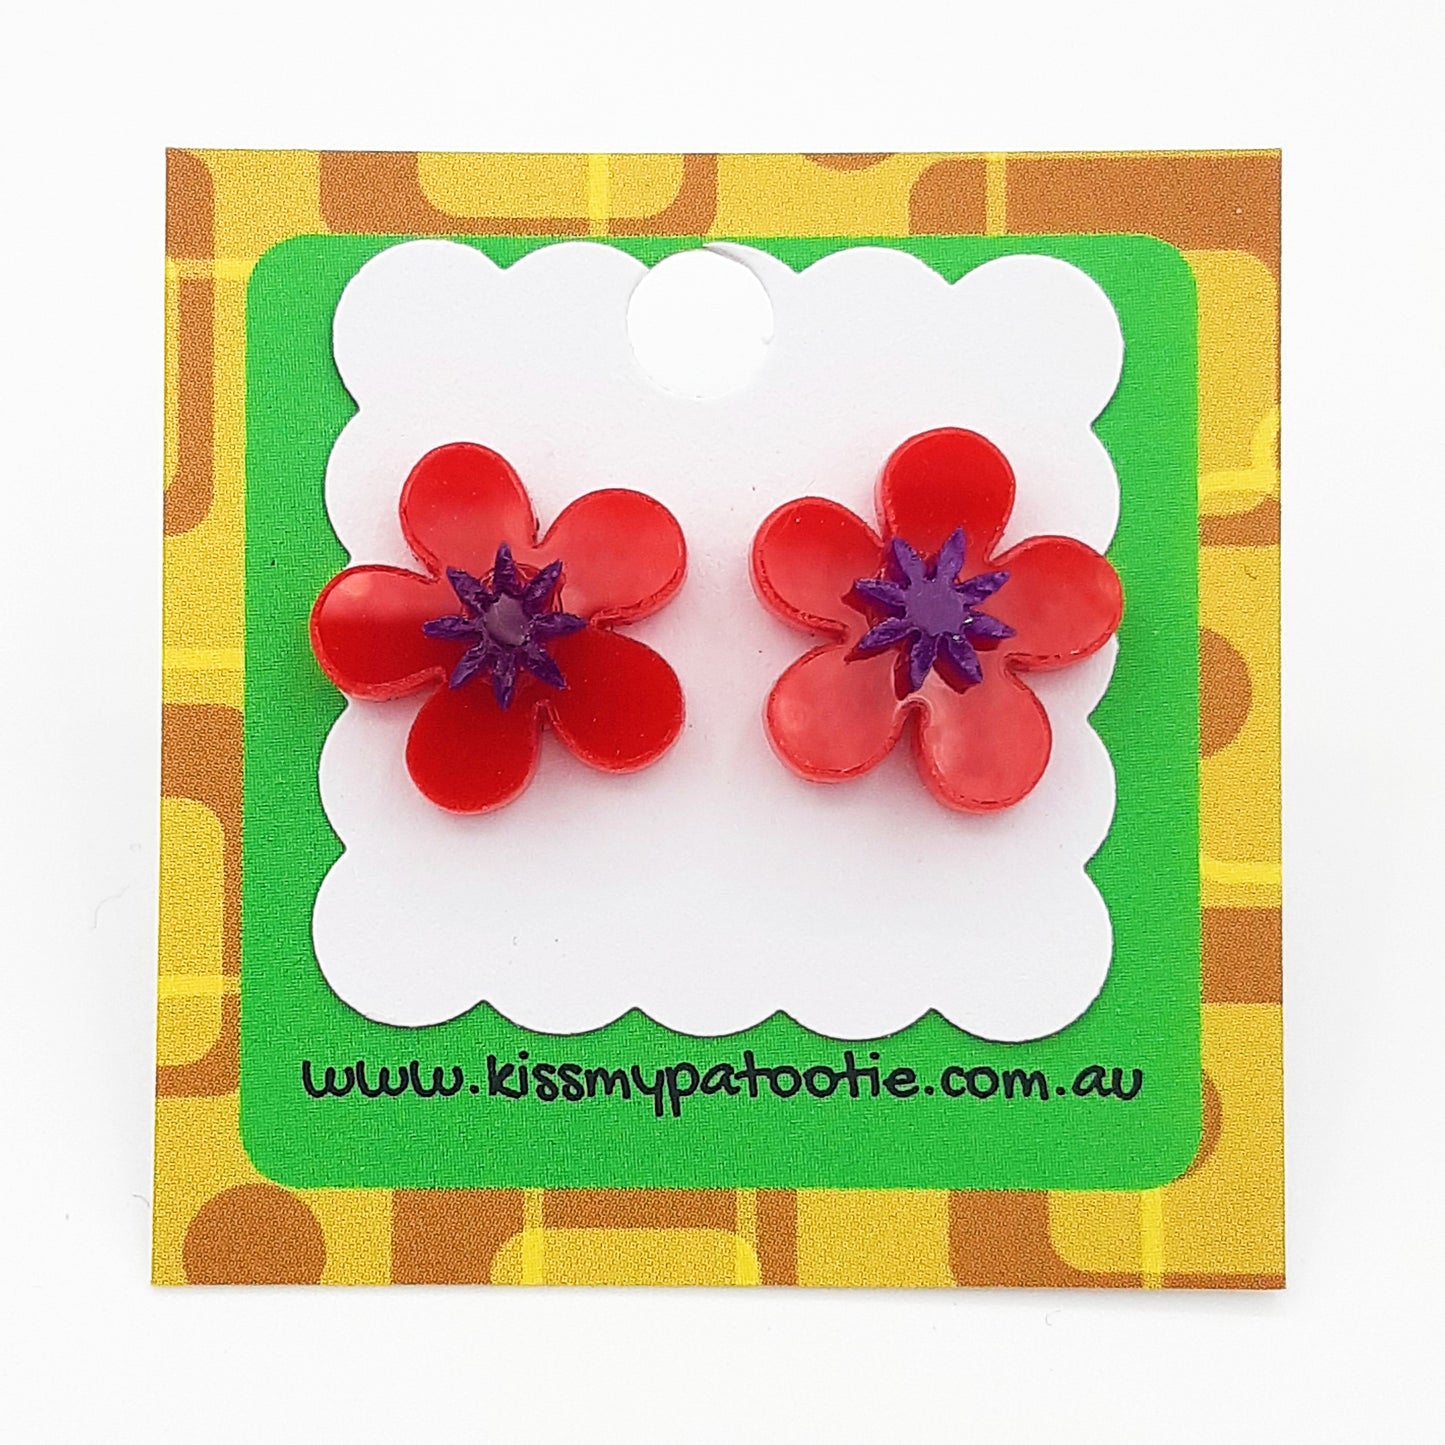 Flower laser cut acrylic earrings - daisy - red